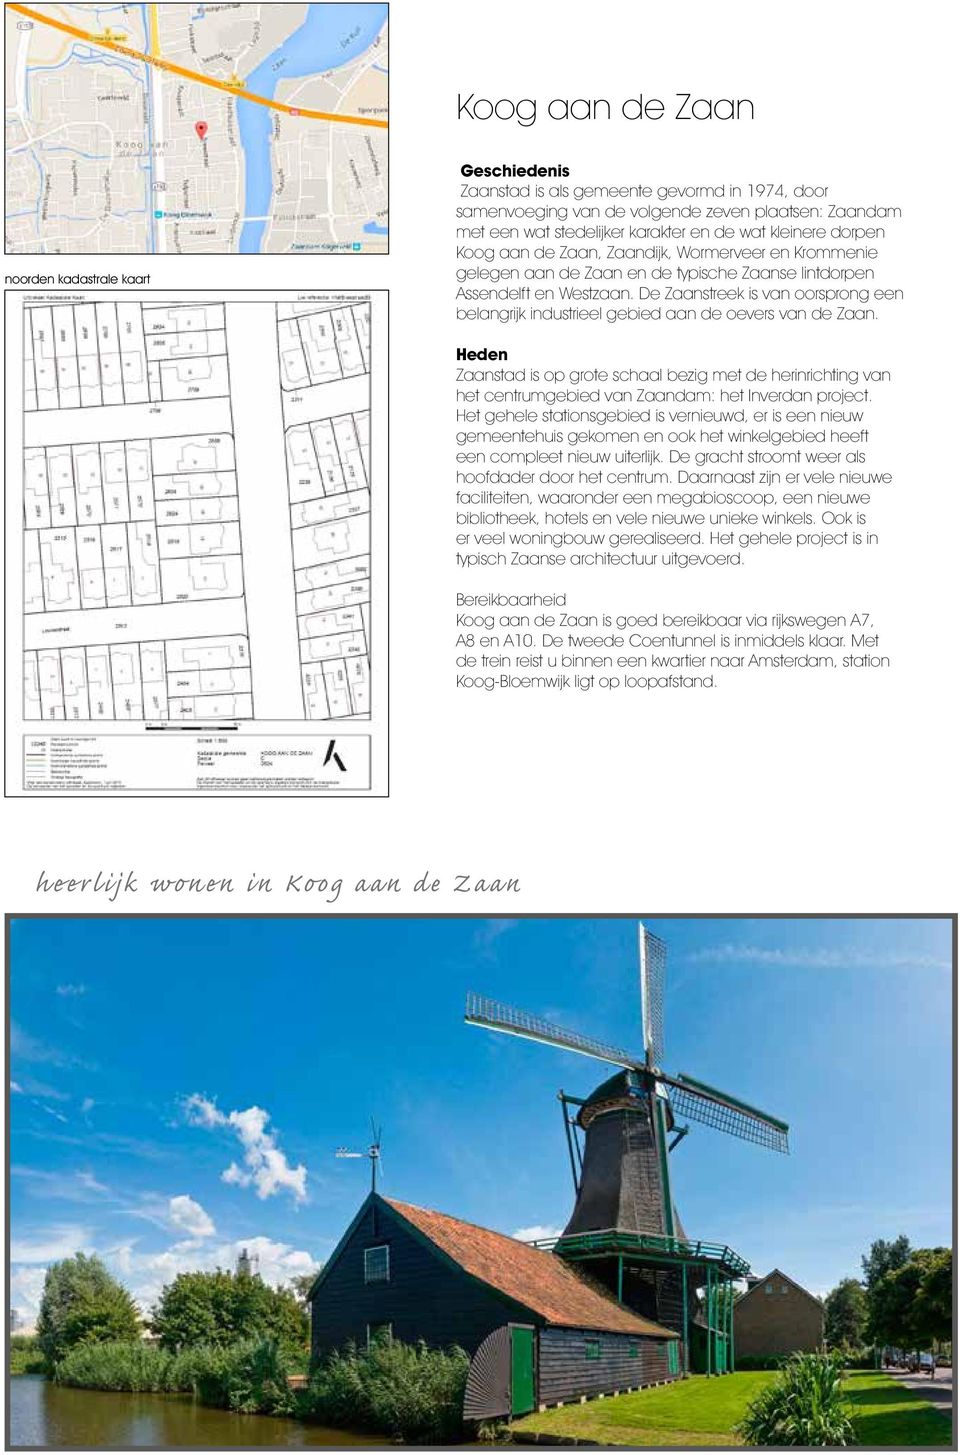 De Zaanstreek is van oorsprong een belangrijk industrieel gebied aan de oevers van de Zaan.